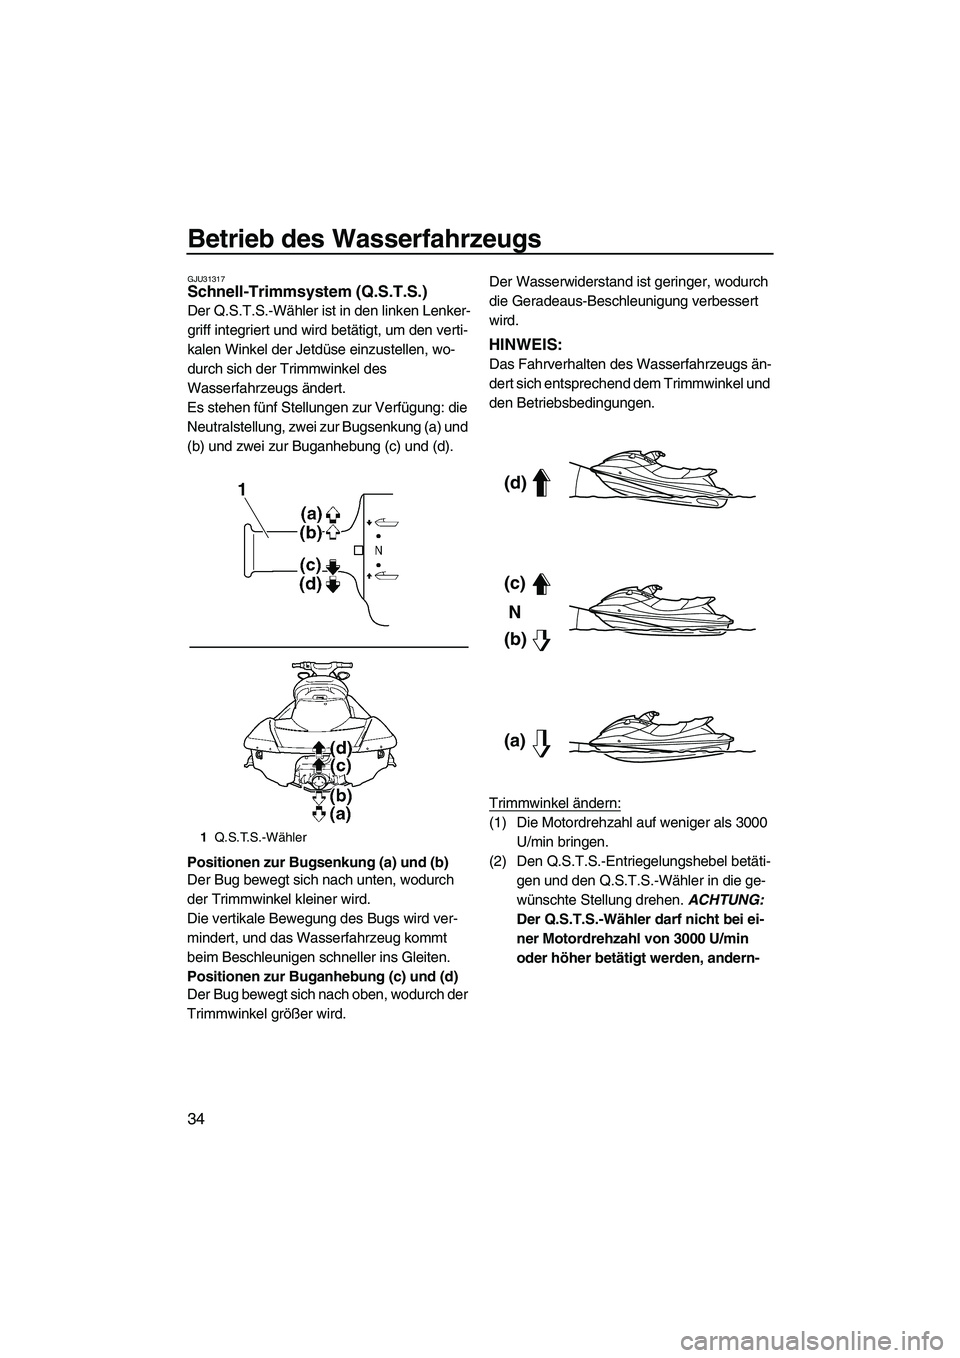 YAMAHA FX HO CRUISER 2010  Betriebsanleitungen (in German) Betrieb des Wasserfahrzeugs
34
GJU31317Schnell-Trimmsystem (Q.S.T.S.) 
Der Q.S.T.S.-Wähler ist in den linken Lenker-
griff integriert und wird betätigt, um den verti-
kalen Winkel der Jetdüse einzu